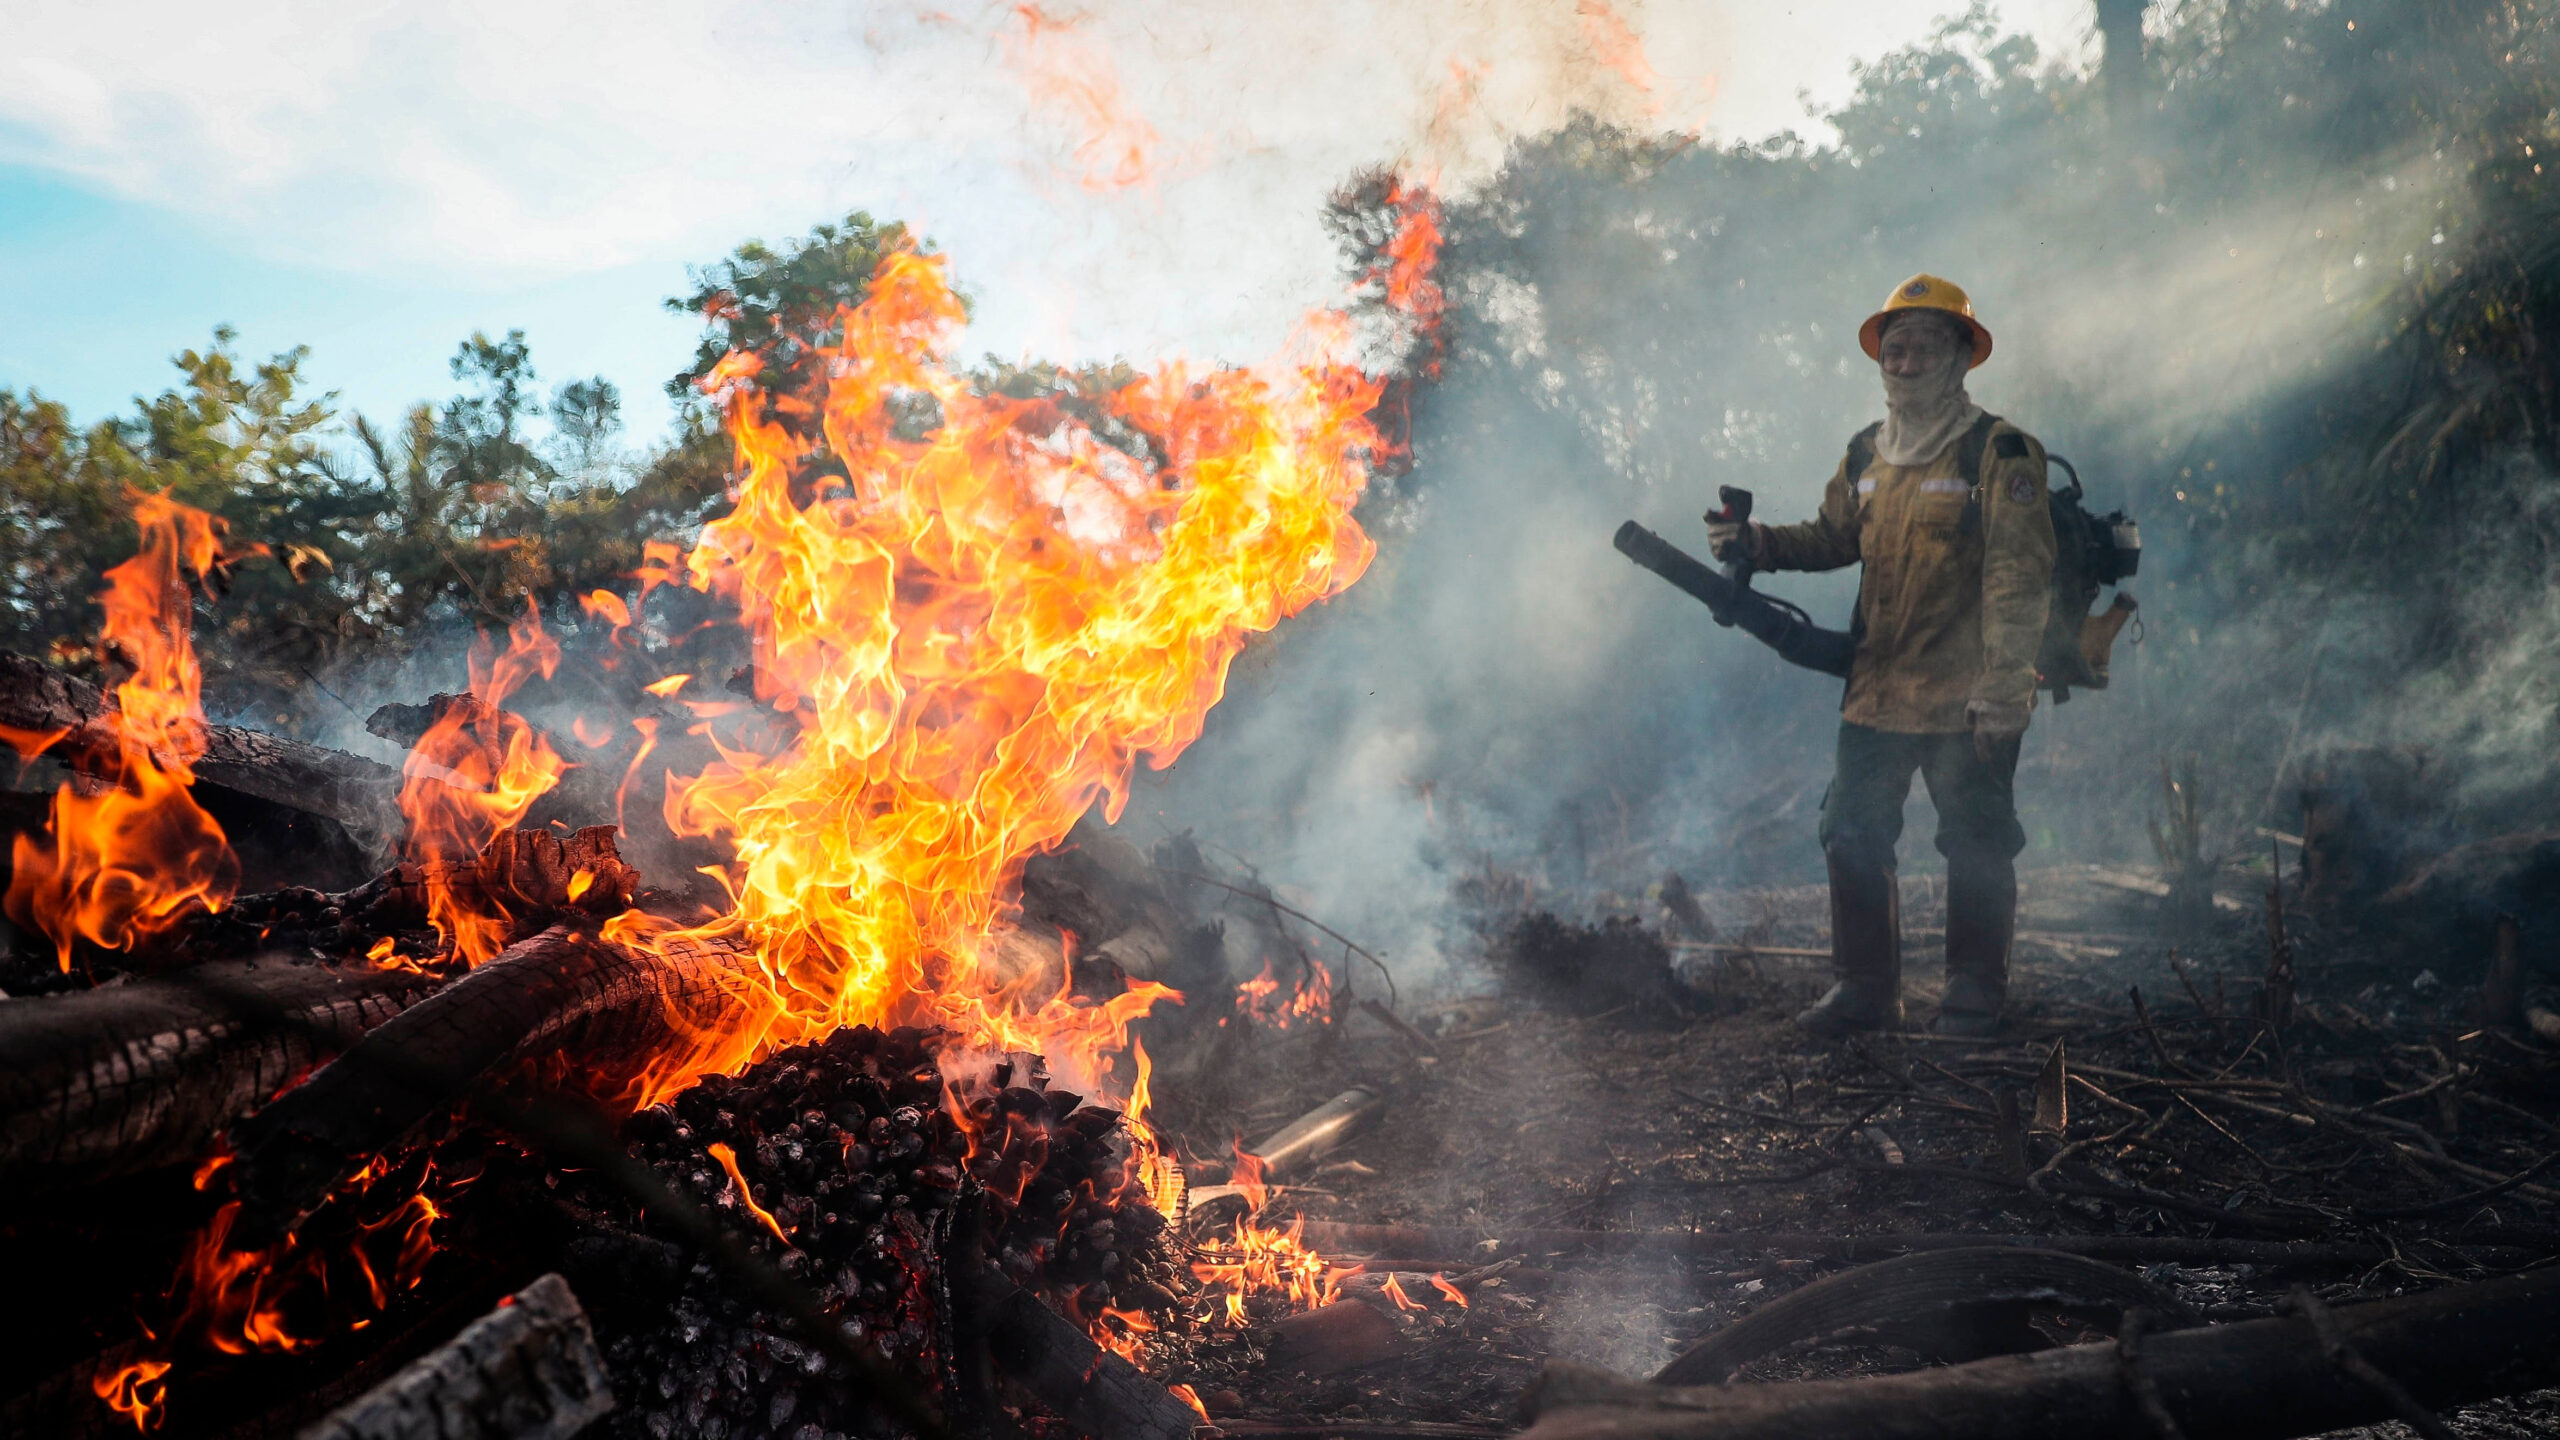 La Amazonia en llamas: temen otra tragedia ambiental tras incremento de incendios